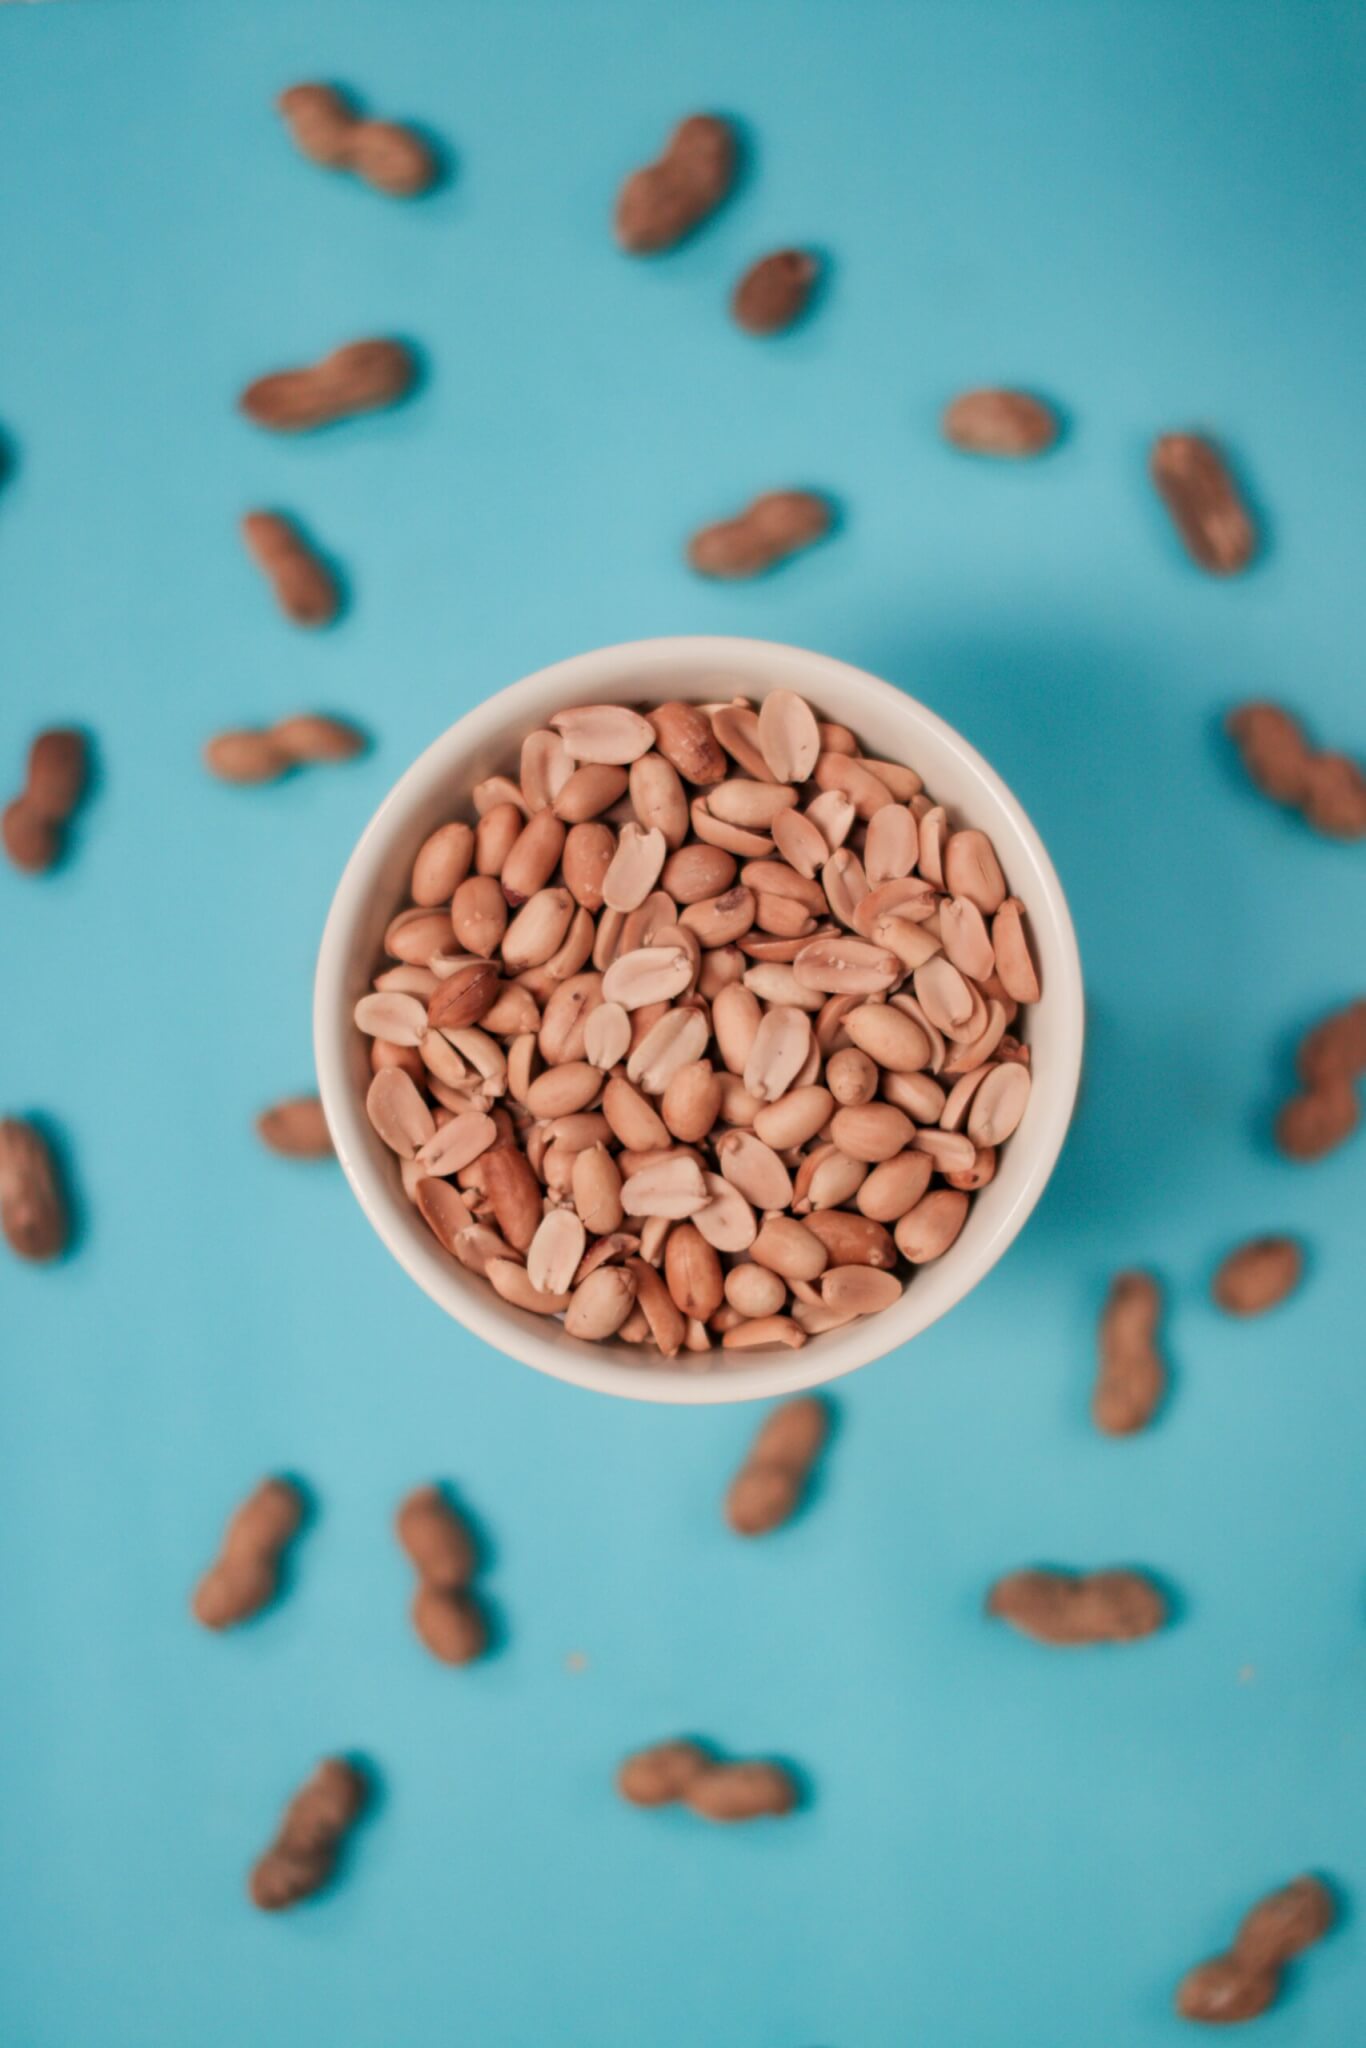 Matérias-primas alimentícias comuns – Amendoim